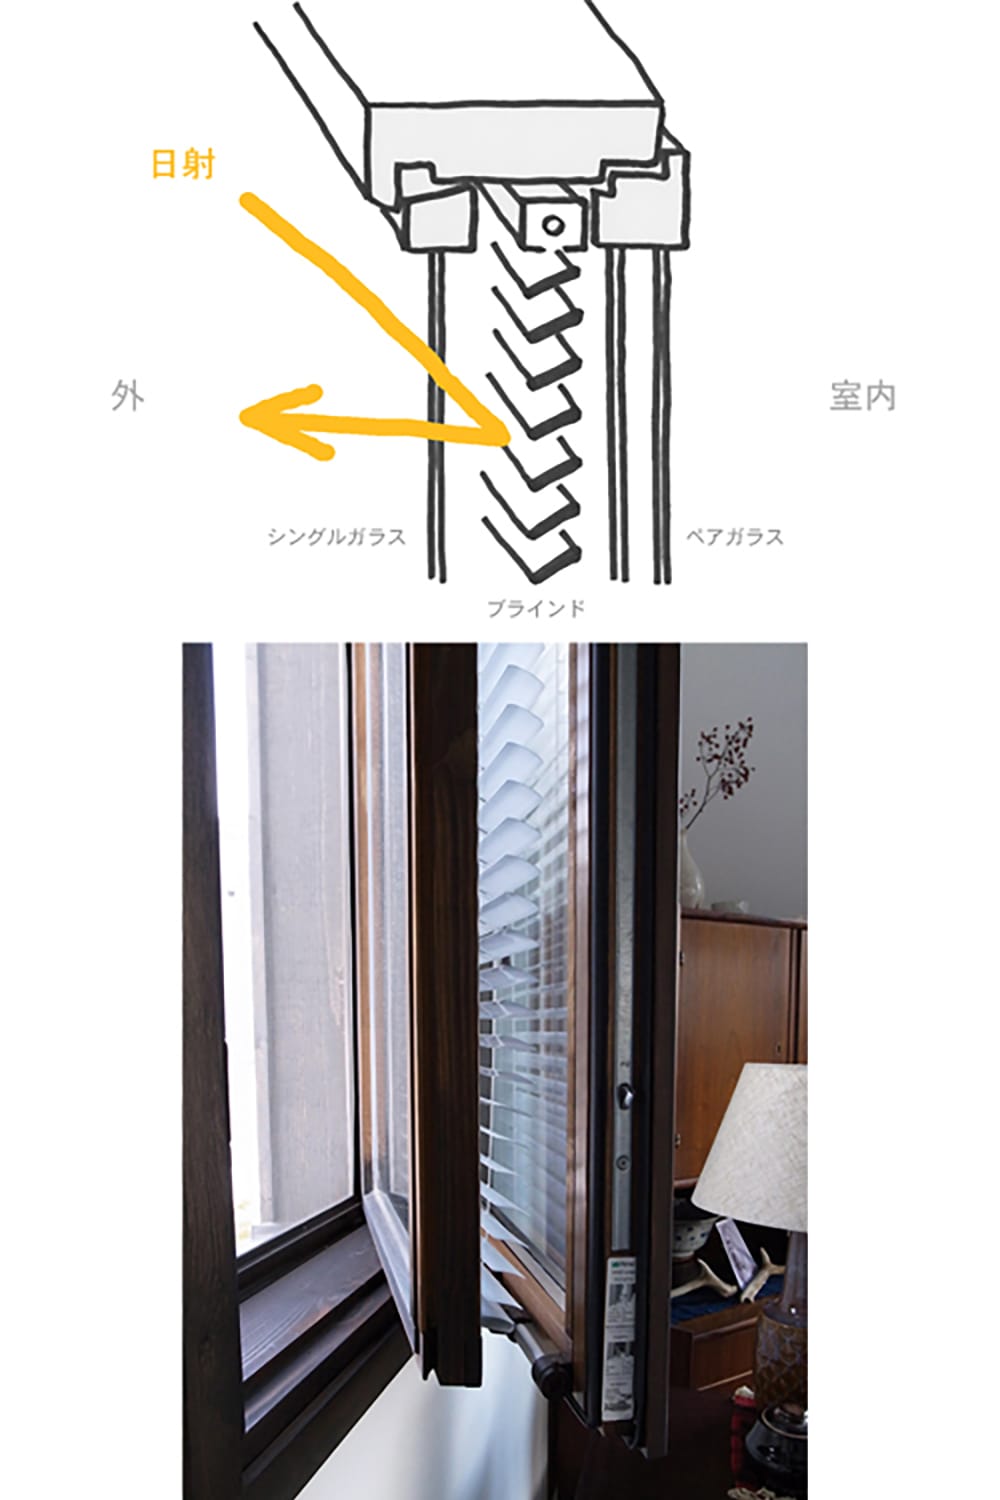 北欧木製窓の内臓ブラインドの効果を説明するスケッチ